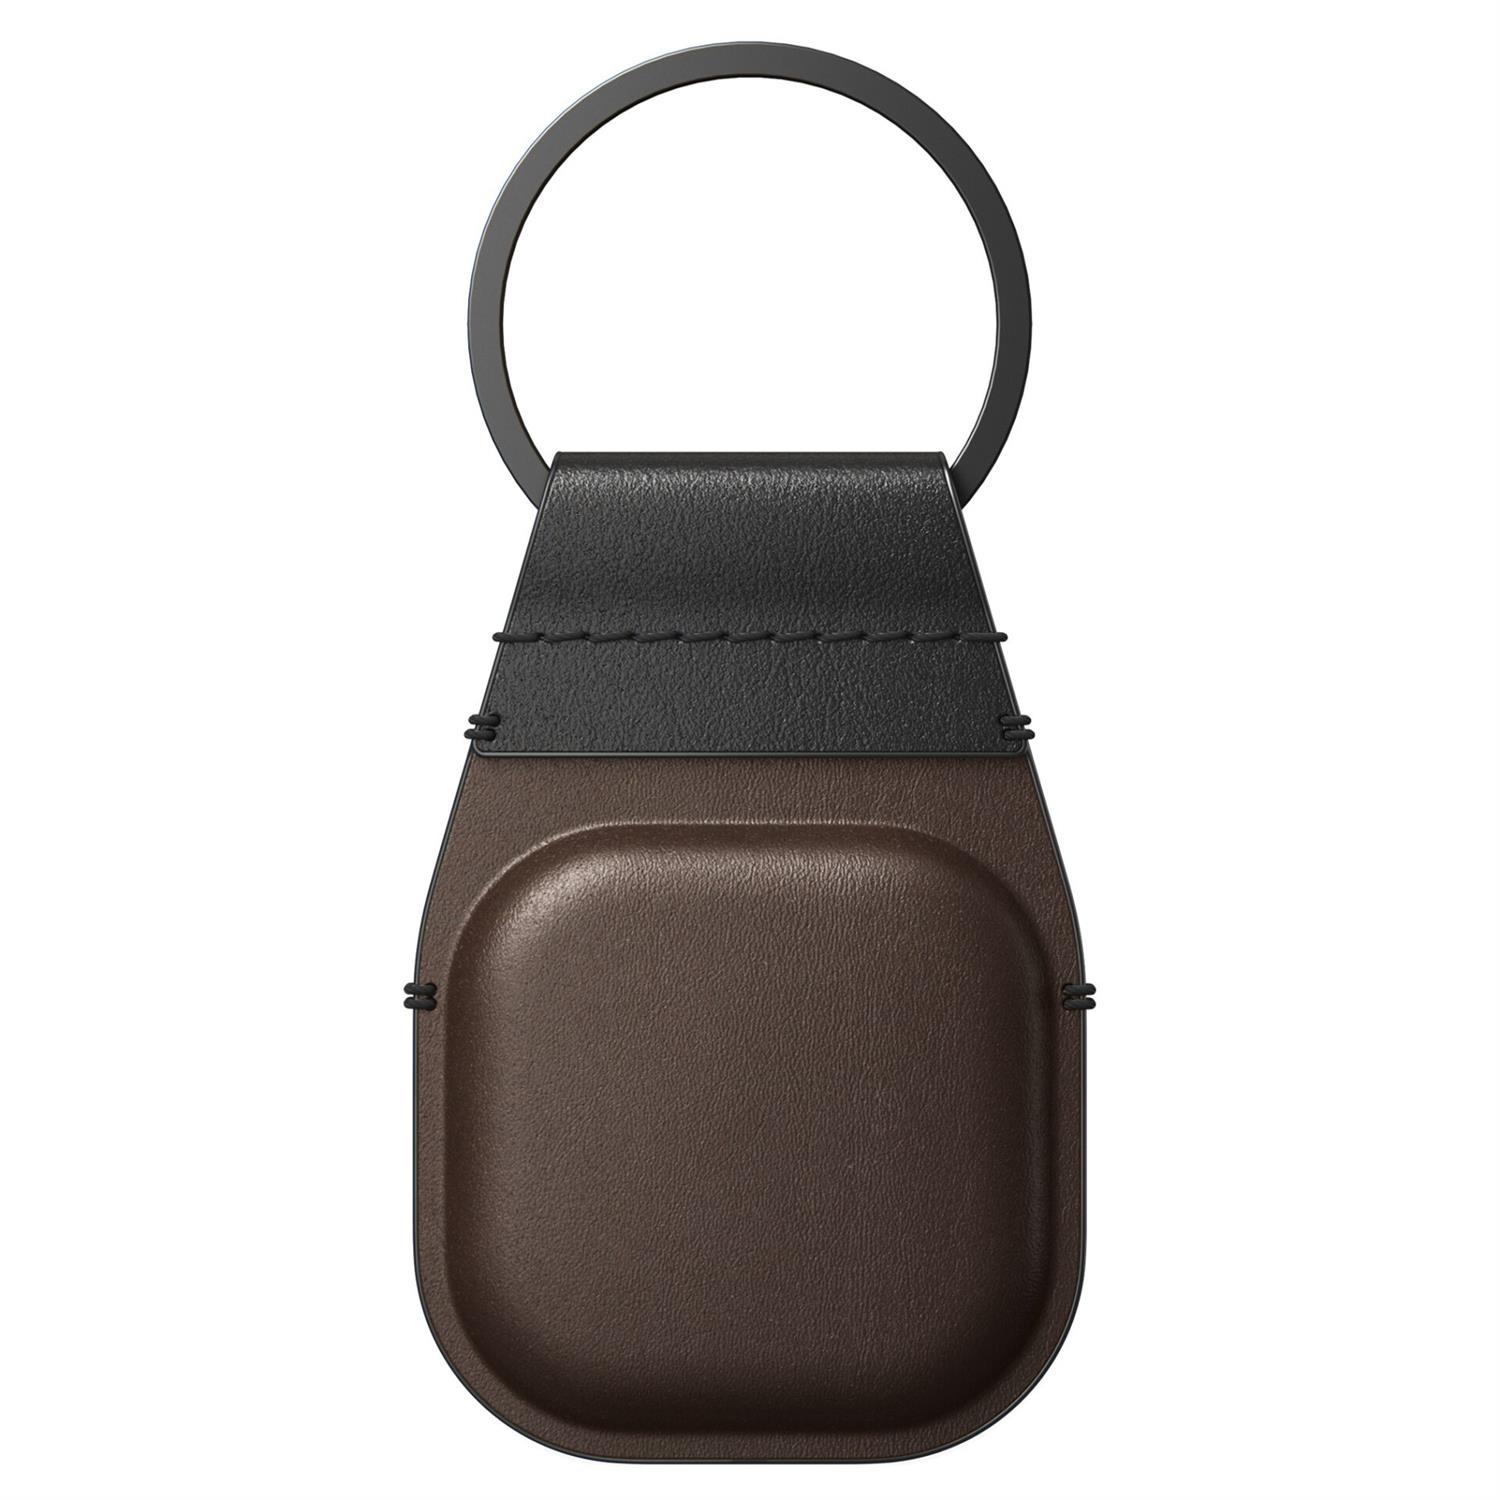 Nomad Airtag Leather Keychain Schlüsselanhänger - Rustic Brown (Braun)